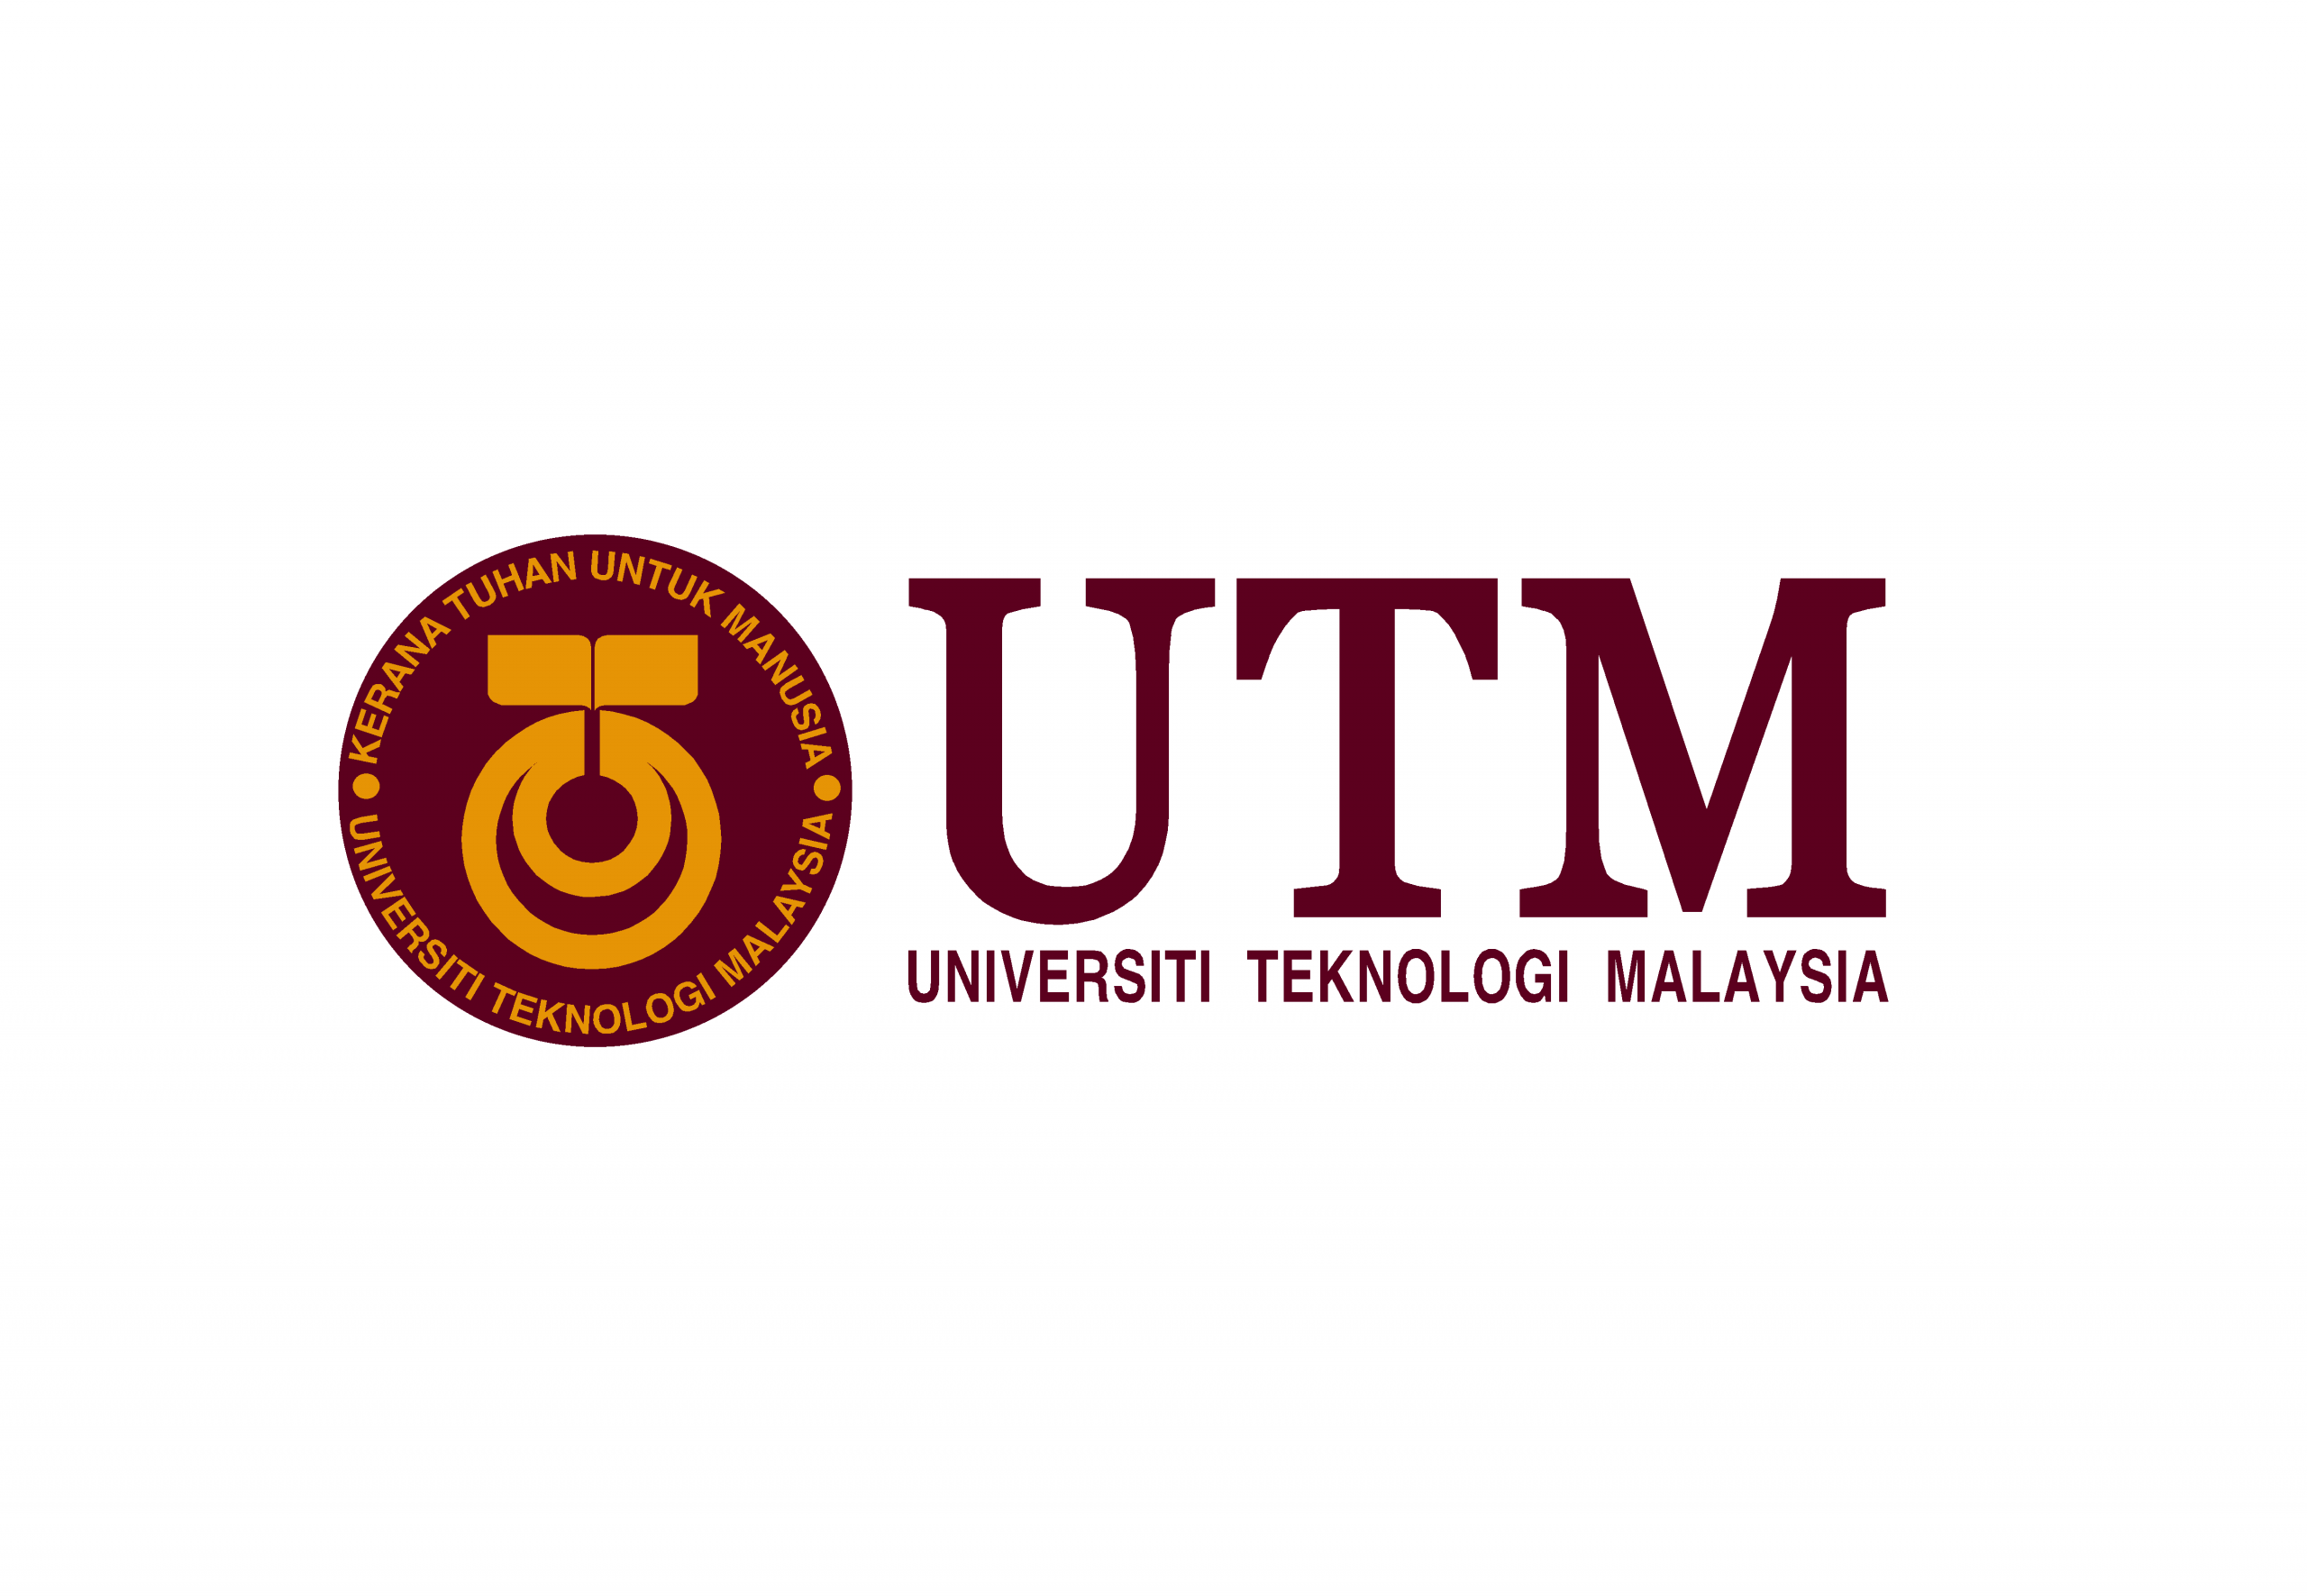 Research Fellow at Universiti Teknologi Malaysia (UTM)